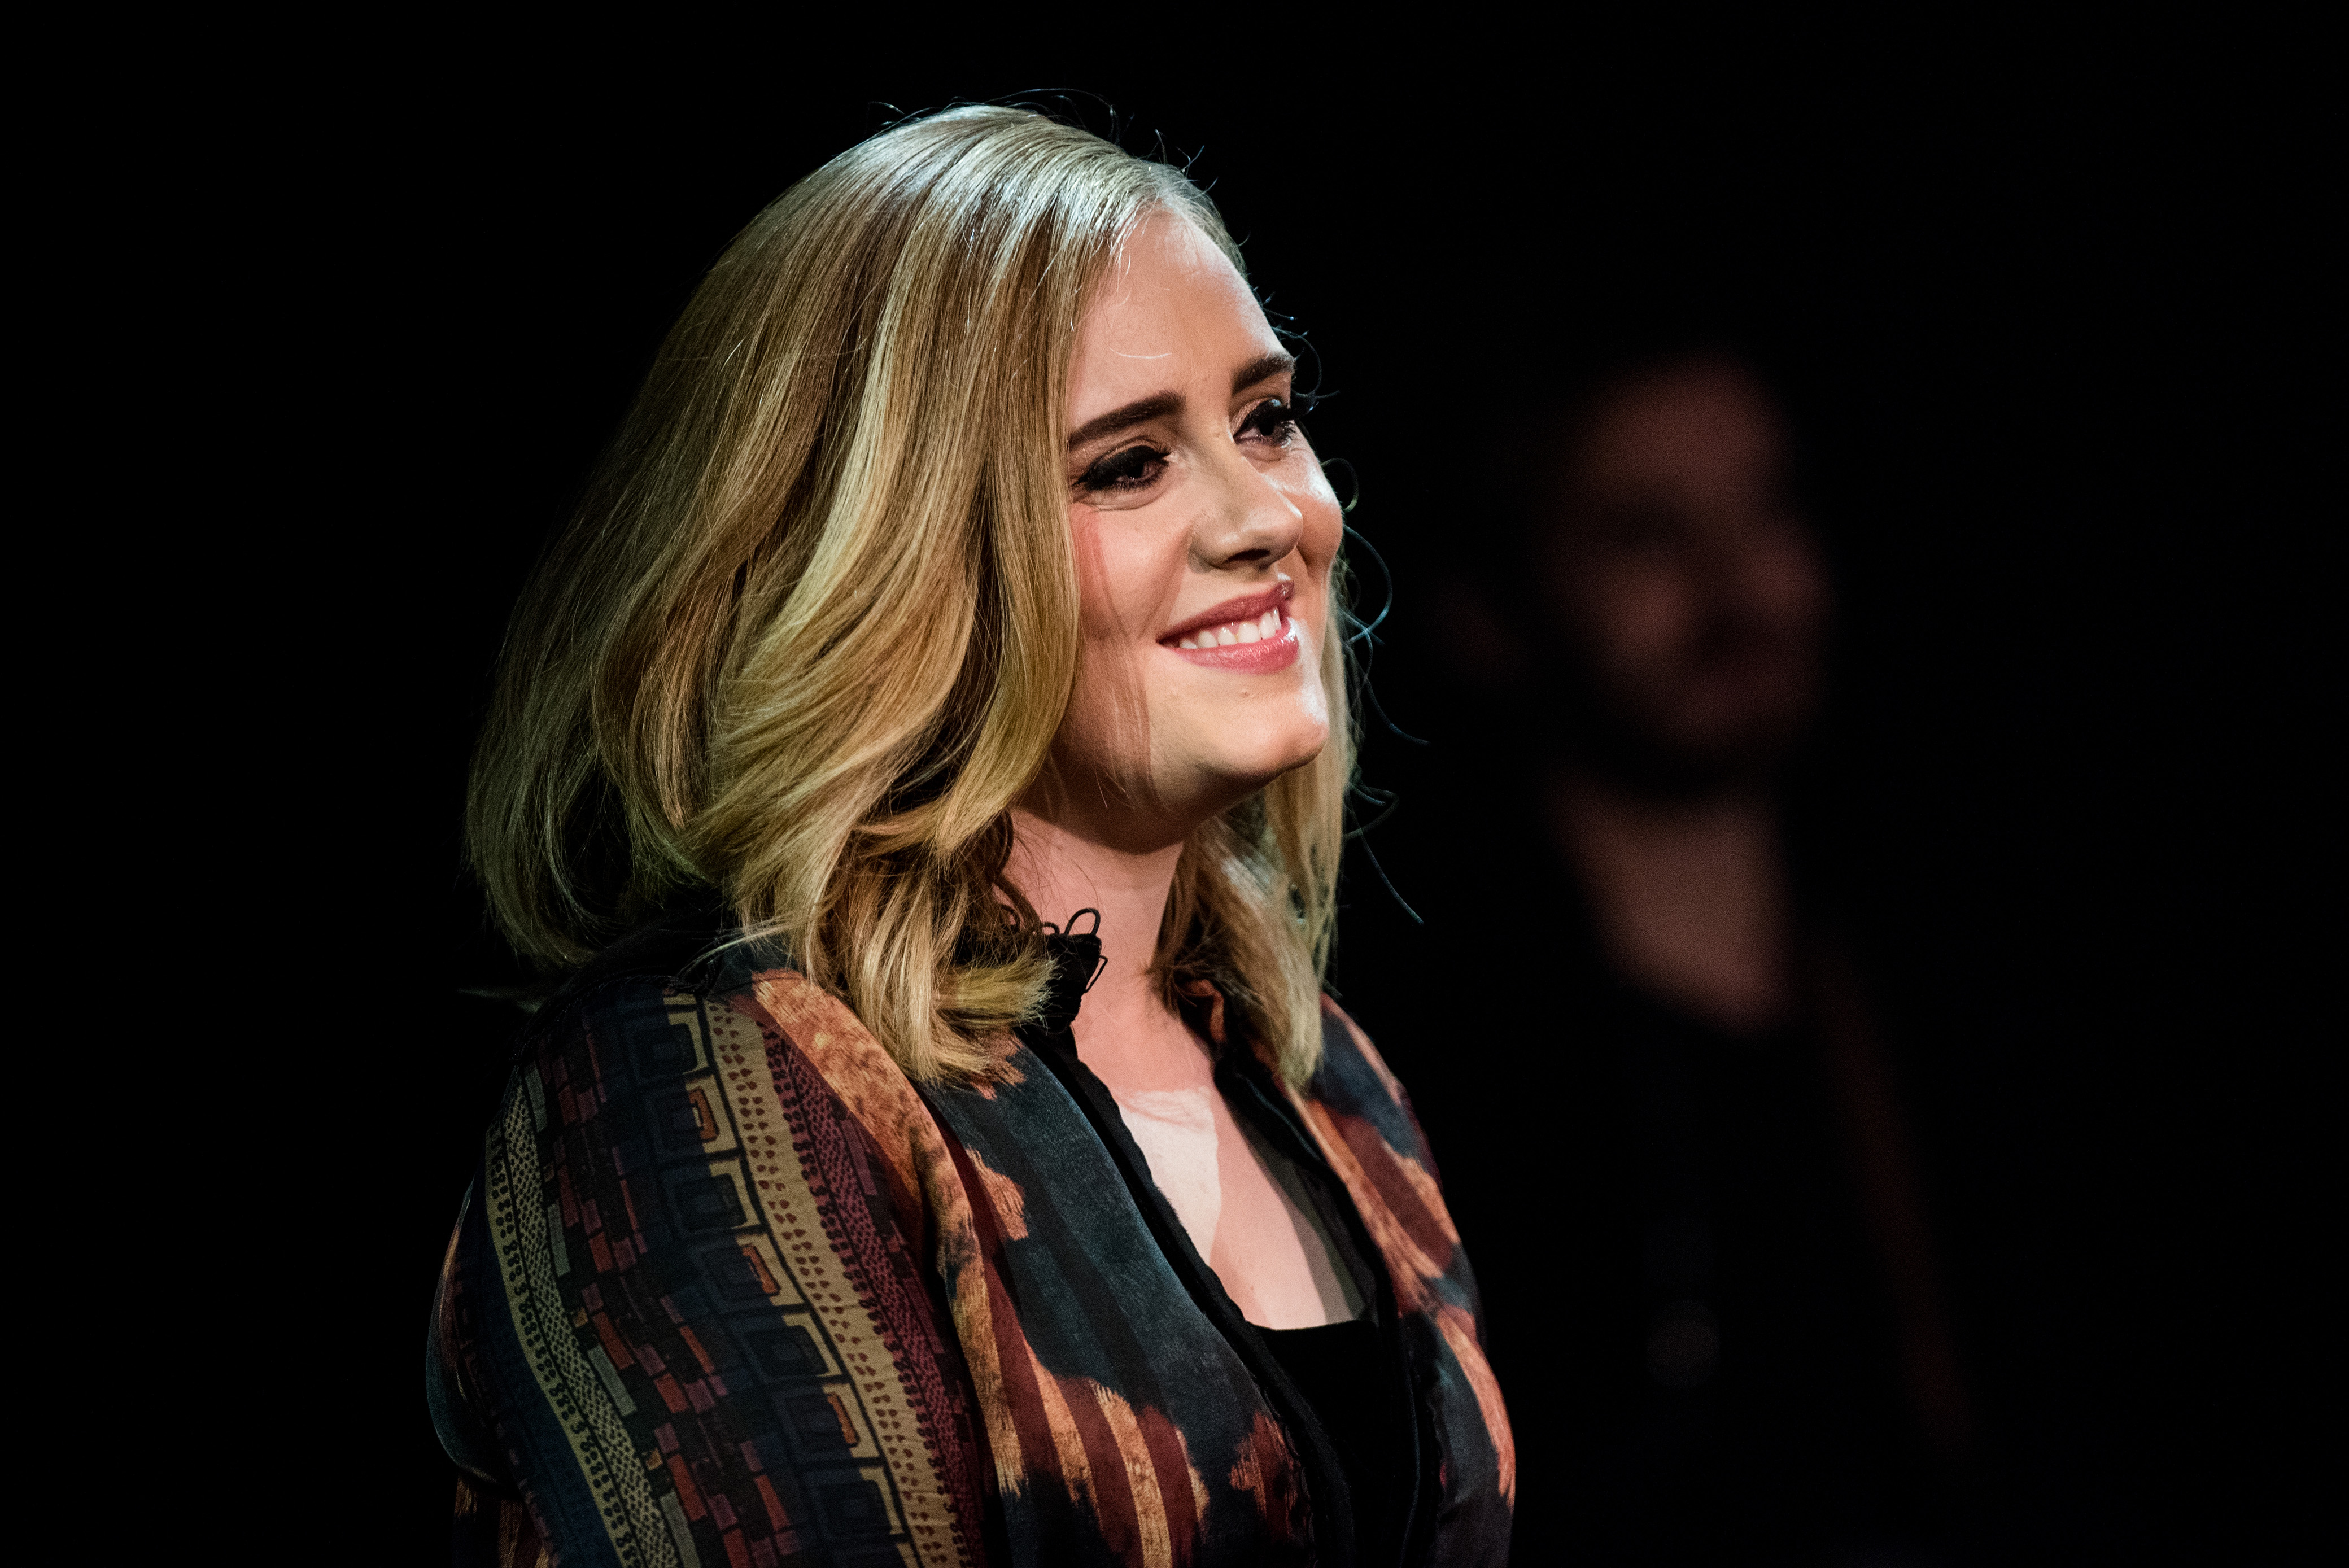 Akhirnya Adele selesai menjalani rangkaian tour untuk mempromosikan album '25' © TPG Images